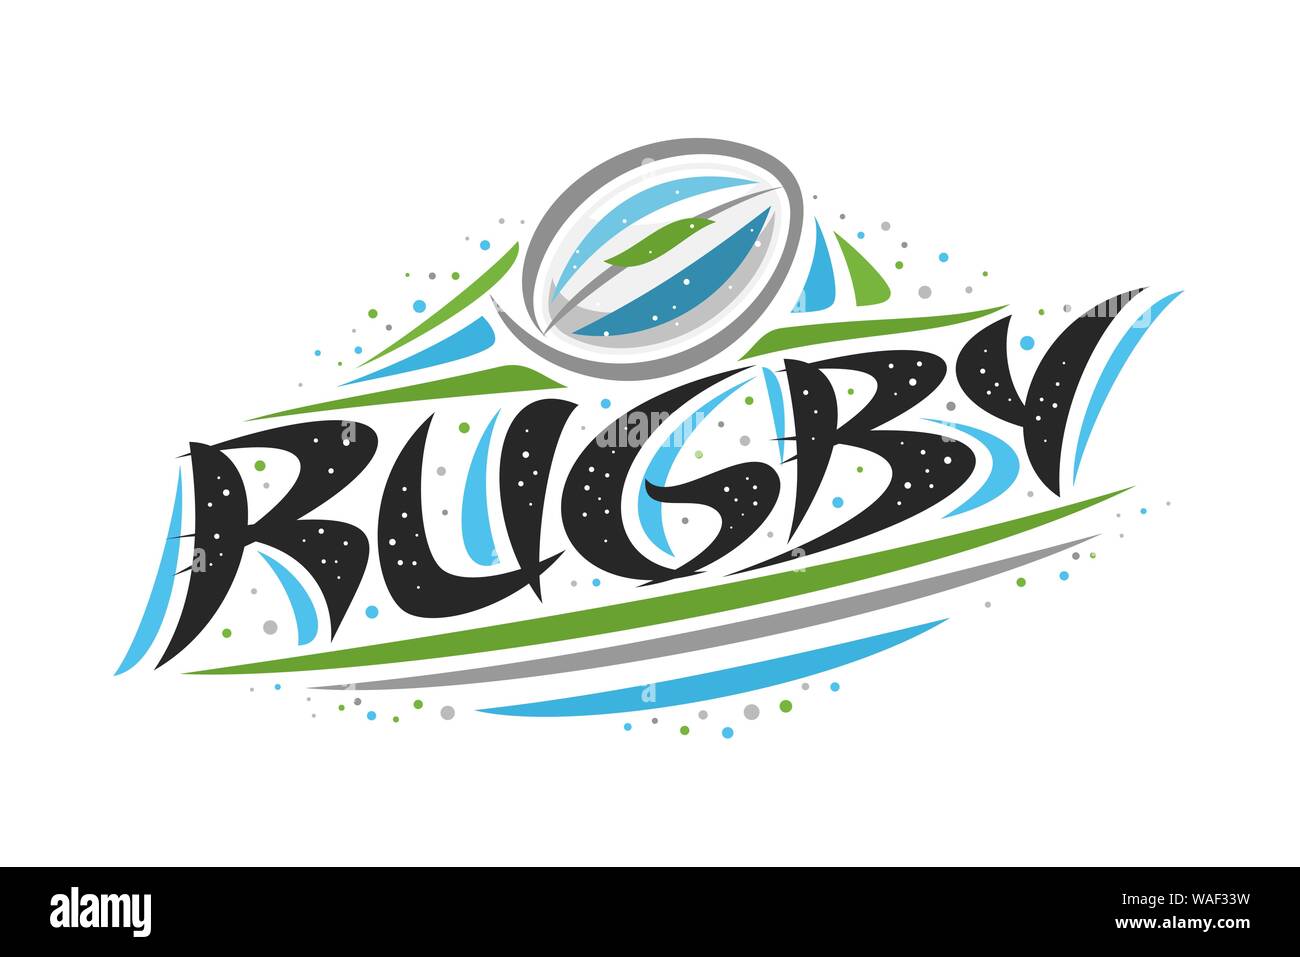 Vektor logo für Rugby Sport, kreative Darstellung des Werfens Ball im Ziel, original dekorative Pinsel Schrift für Wort Rugby, abstrakte Simpl Stock Vektor